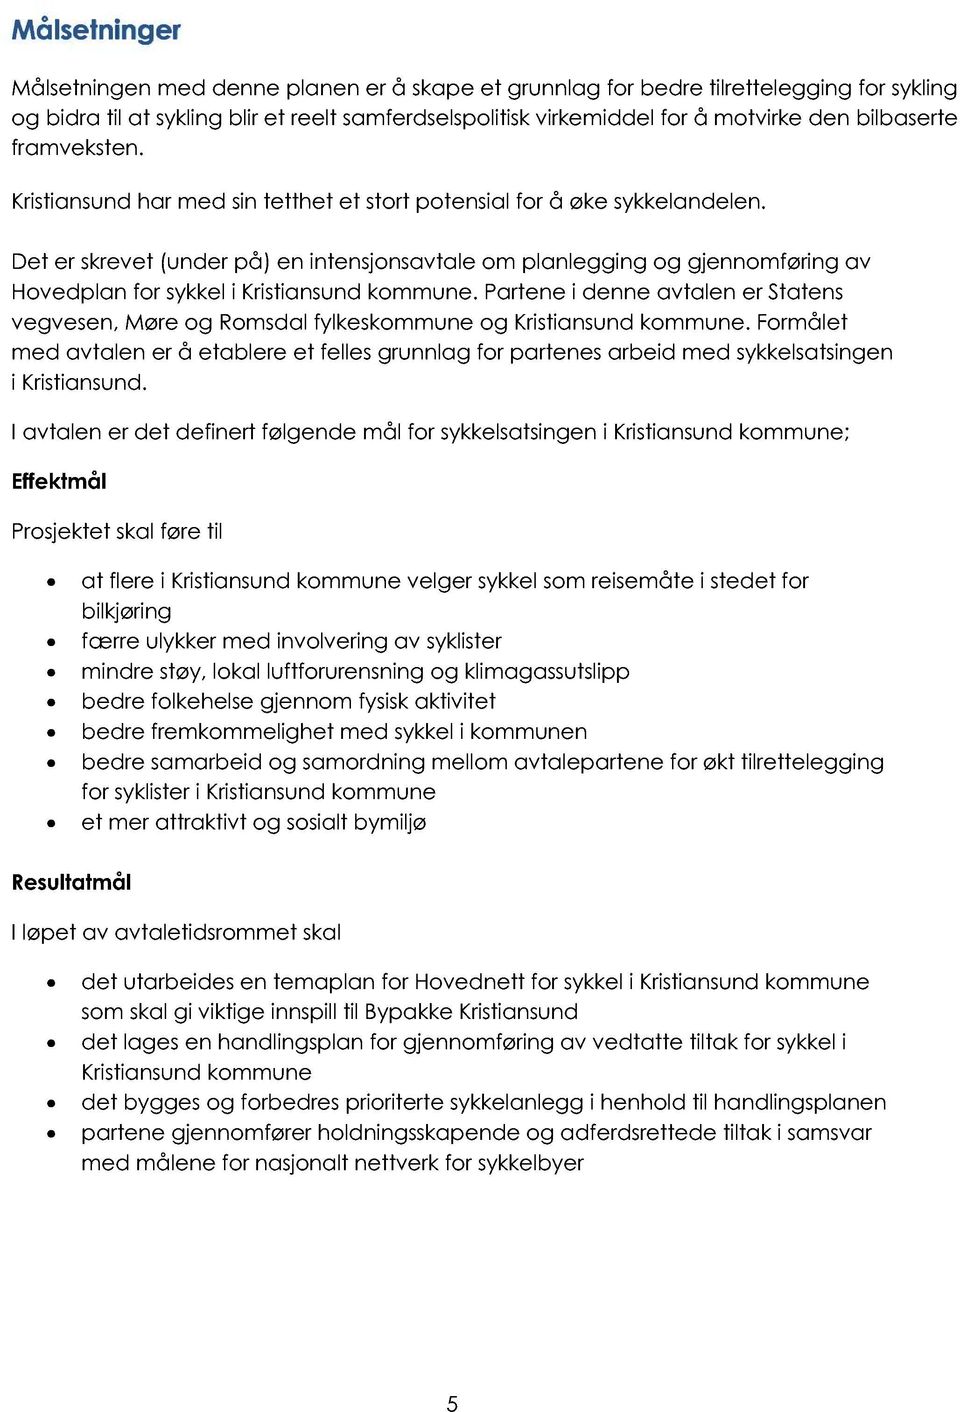 Det er skrevet (under på) en intensjonsavtale om planlegging og gjennomføring av Hoved plan for sykkel i Kristiansund kommune.